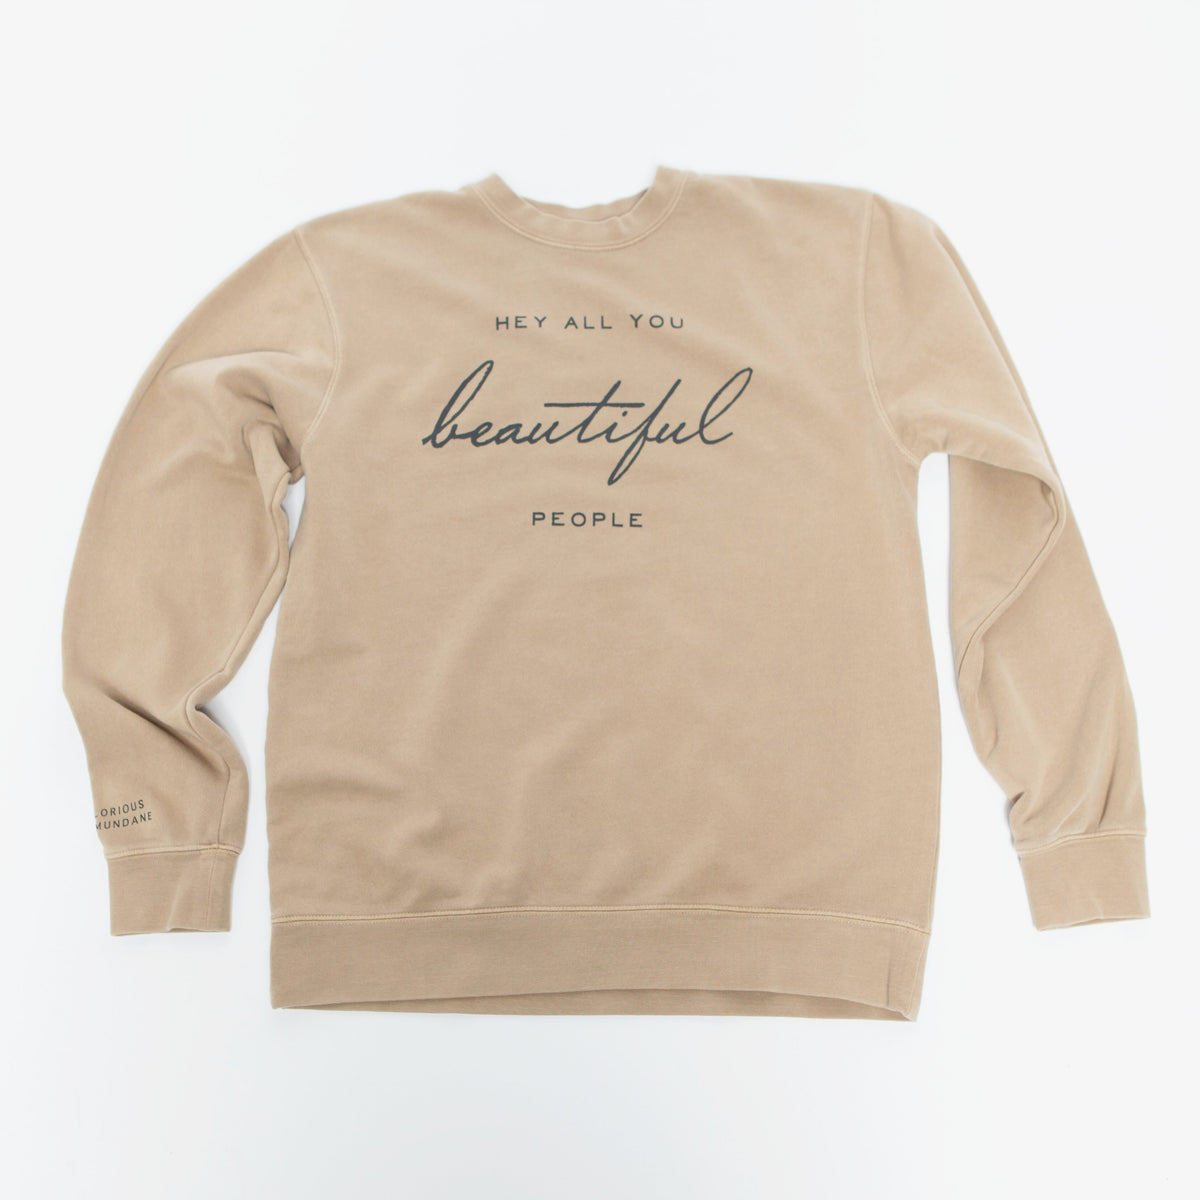 Beautiful People Crewneck Sweatshirt